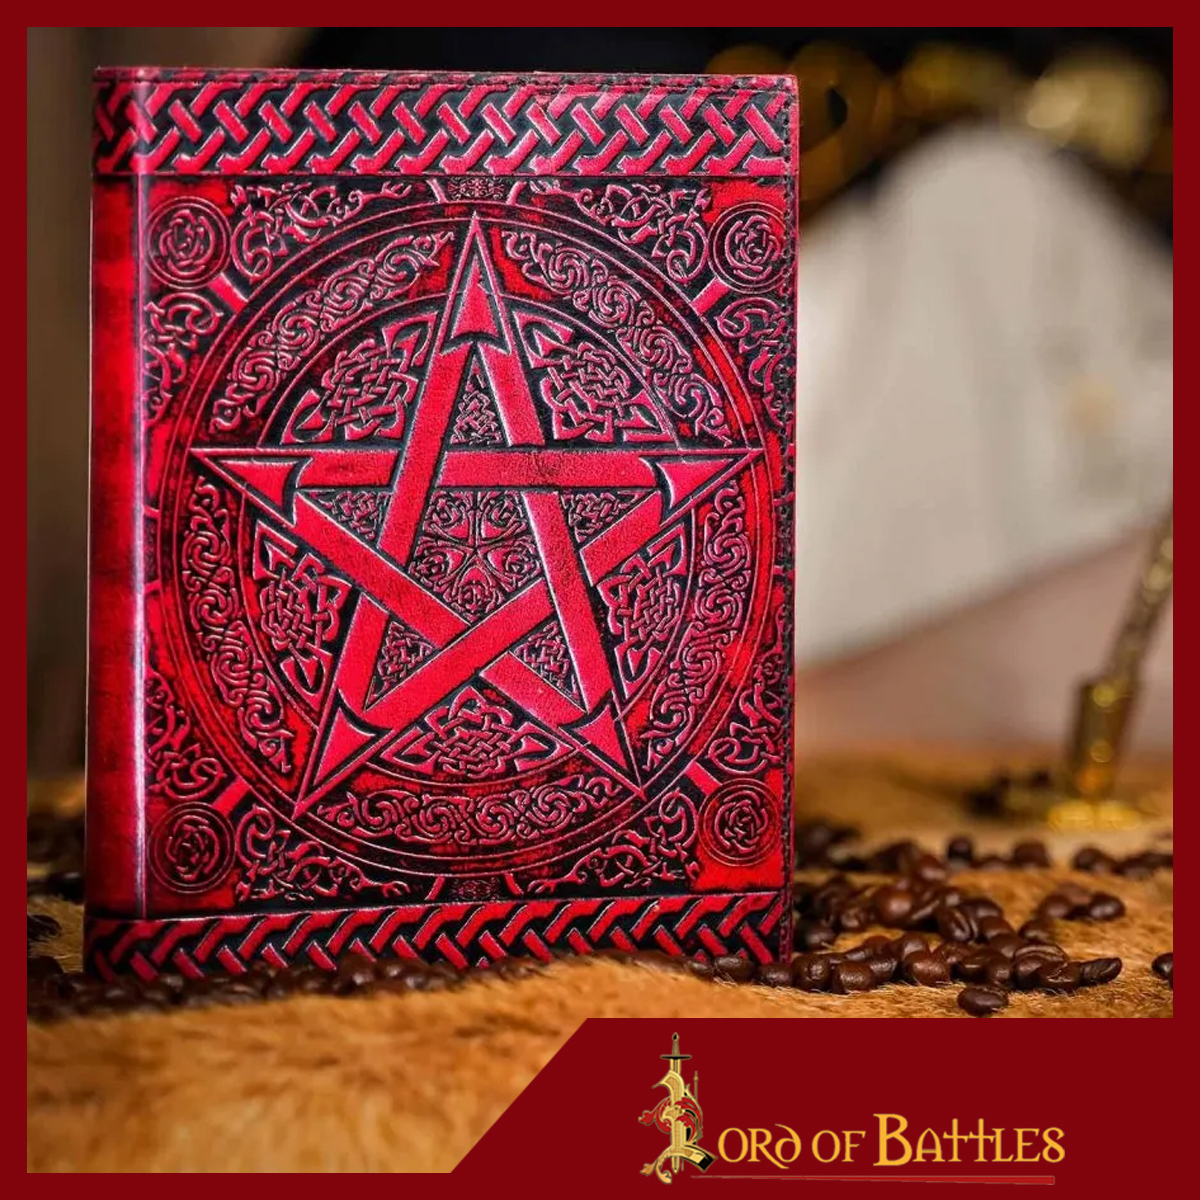 Buch in Leder eingebunden mit Pentagramm Motiv